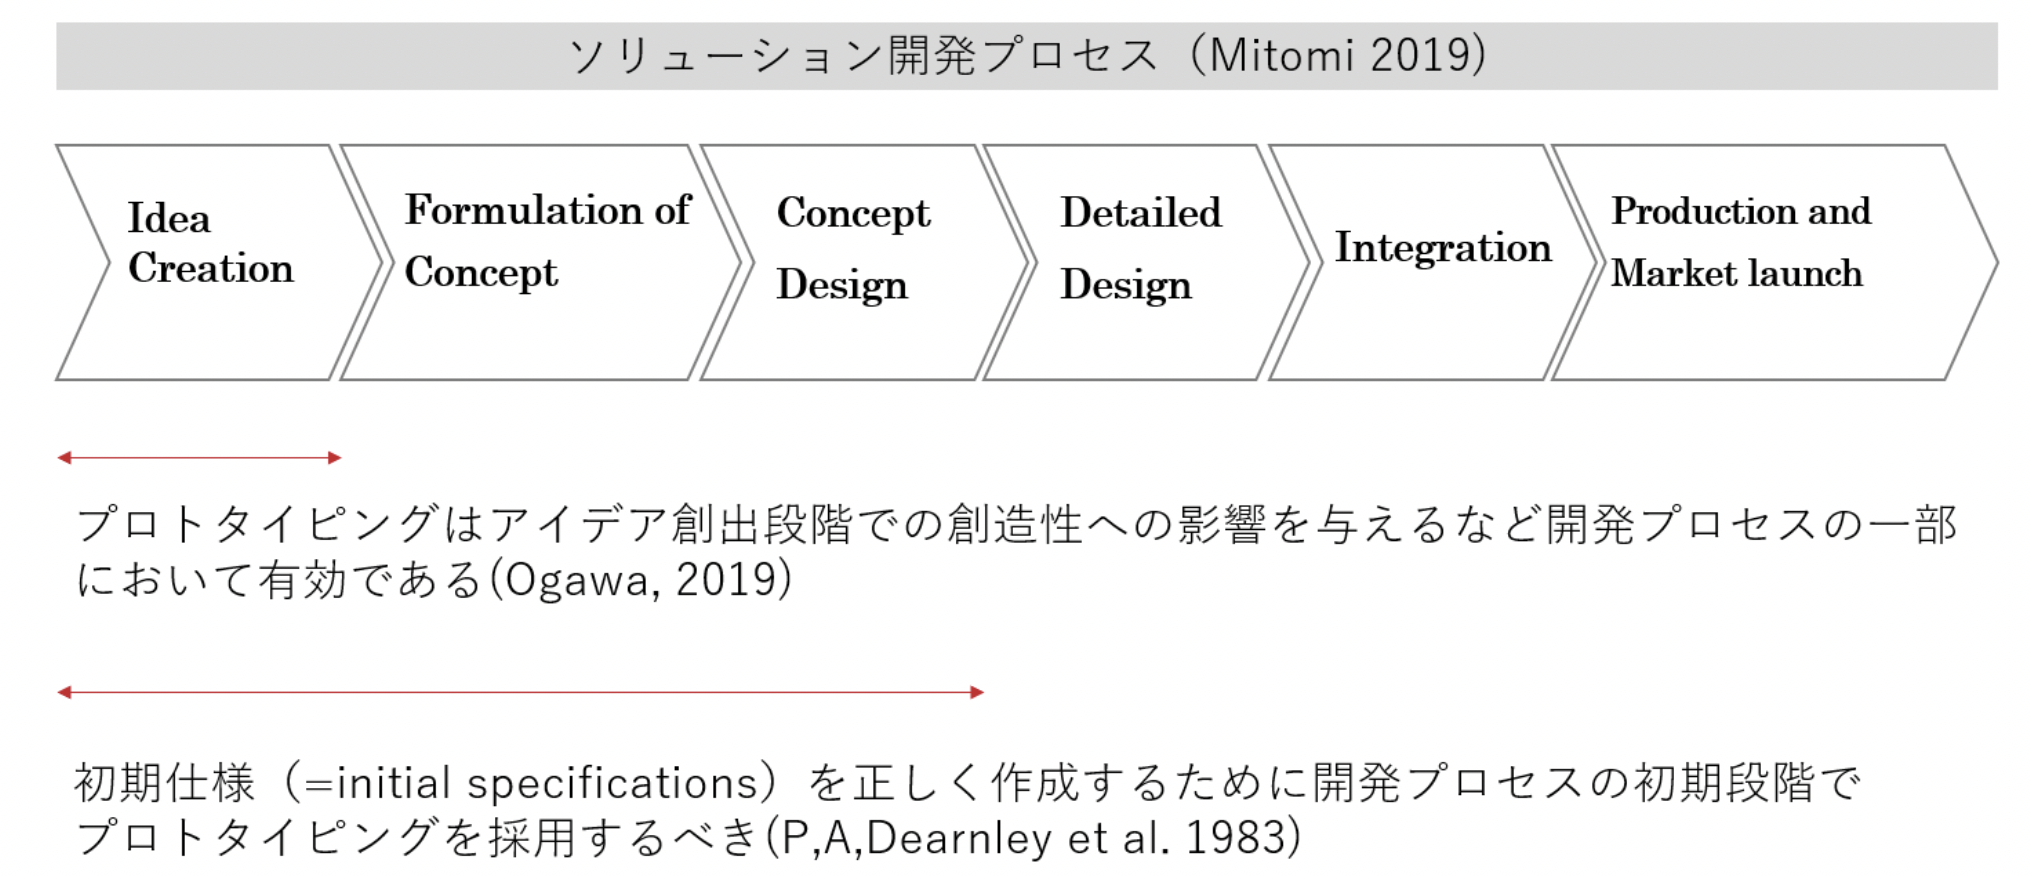 日本創造学会第41回研究大会にて、プロトタイピングの事例の評価・分析に関して発表